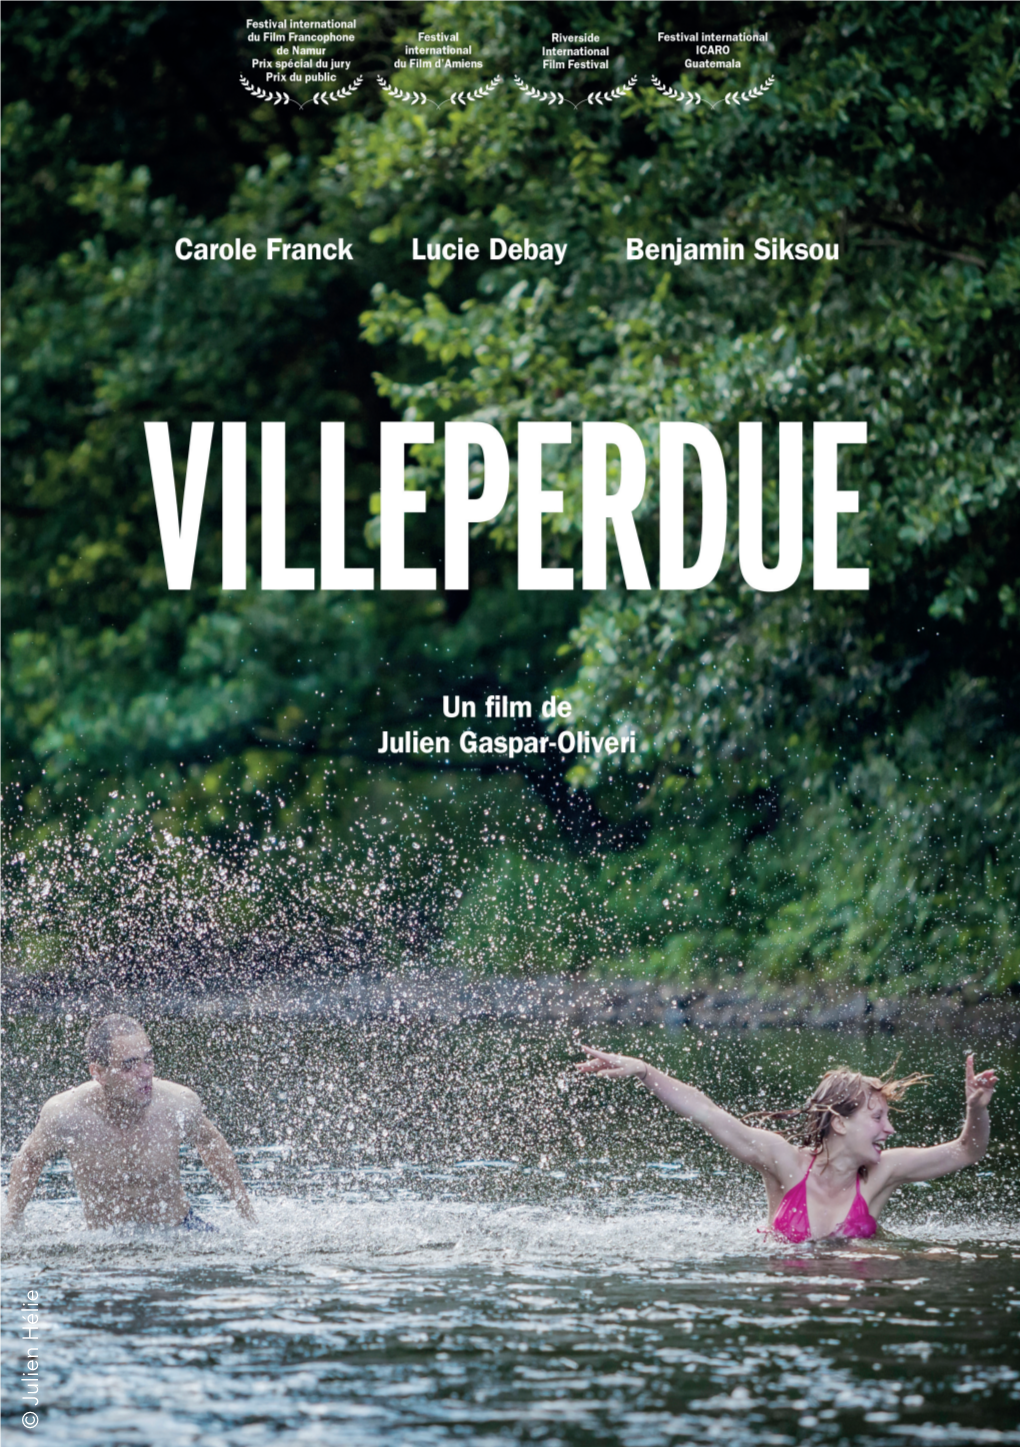 VILLEPERDUE Un Film De Julien Gaspar-Oliveri